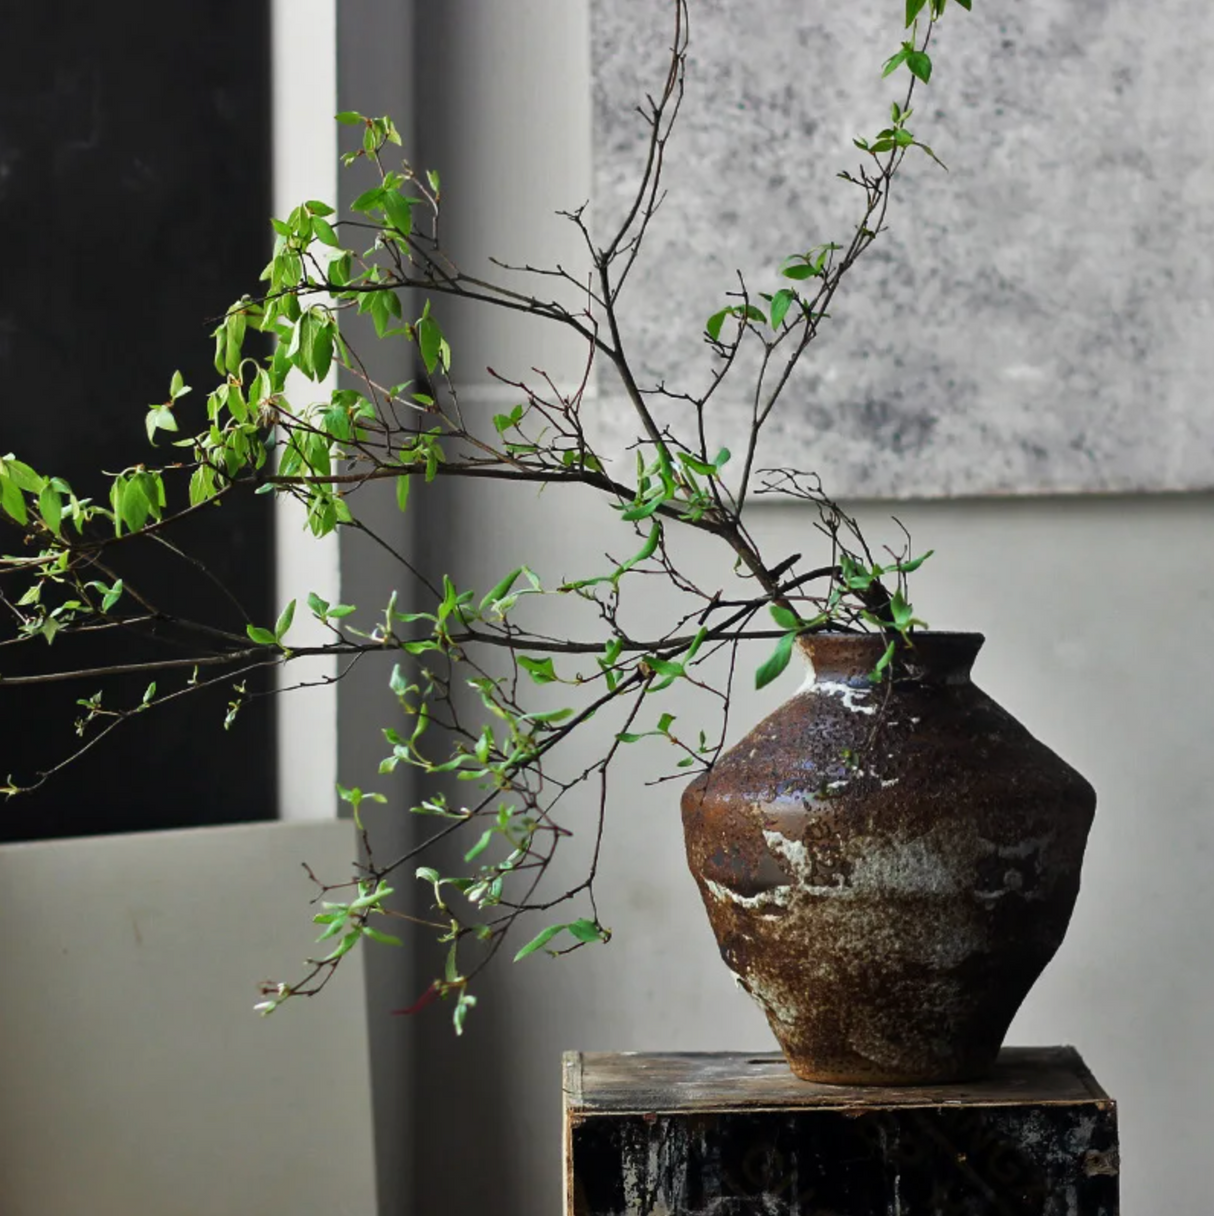 Vase japonais style très ancien